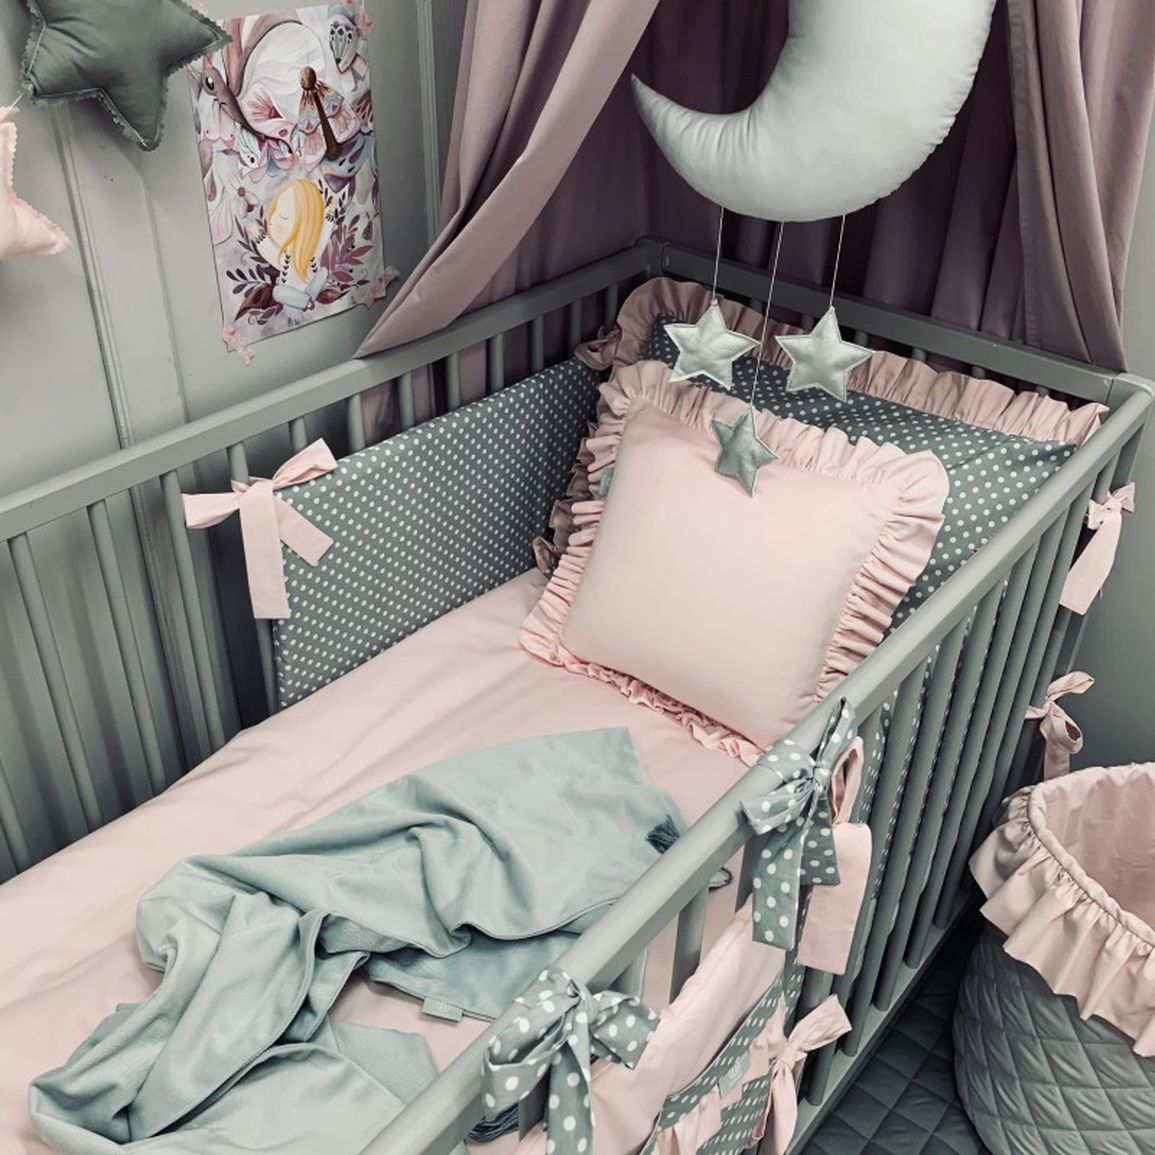 Bavlnená posteľná bielizeň s volánikom, sivá s púdrovo ružovým volánikom